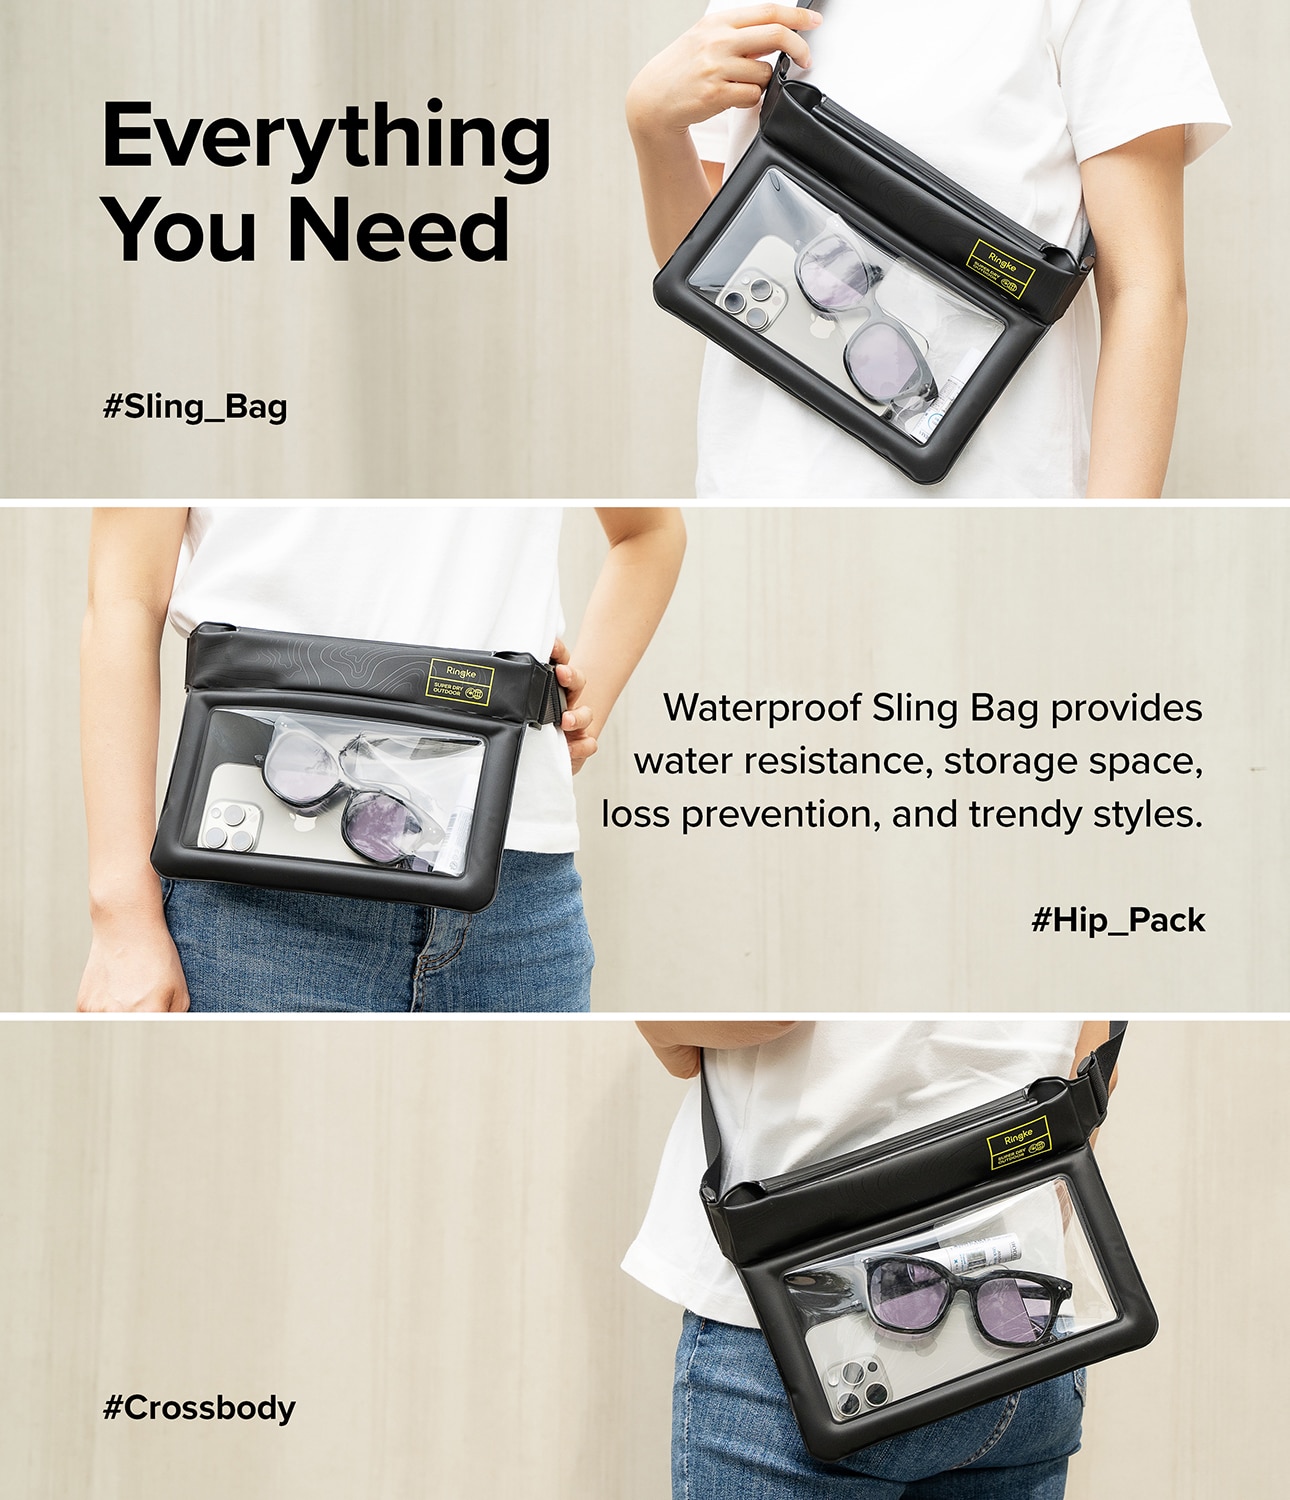 Universal Waterproof Sling Bag, Black